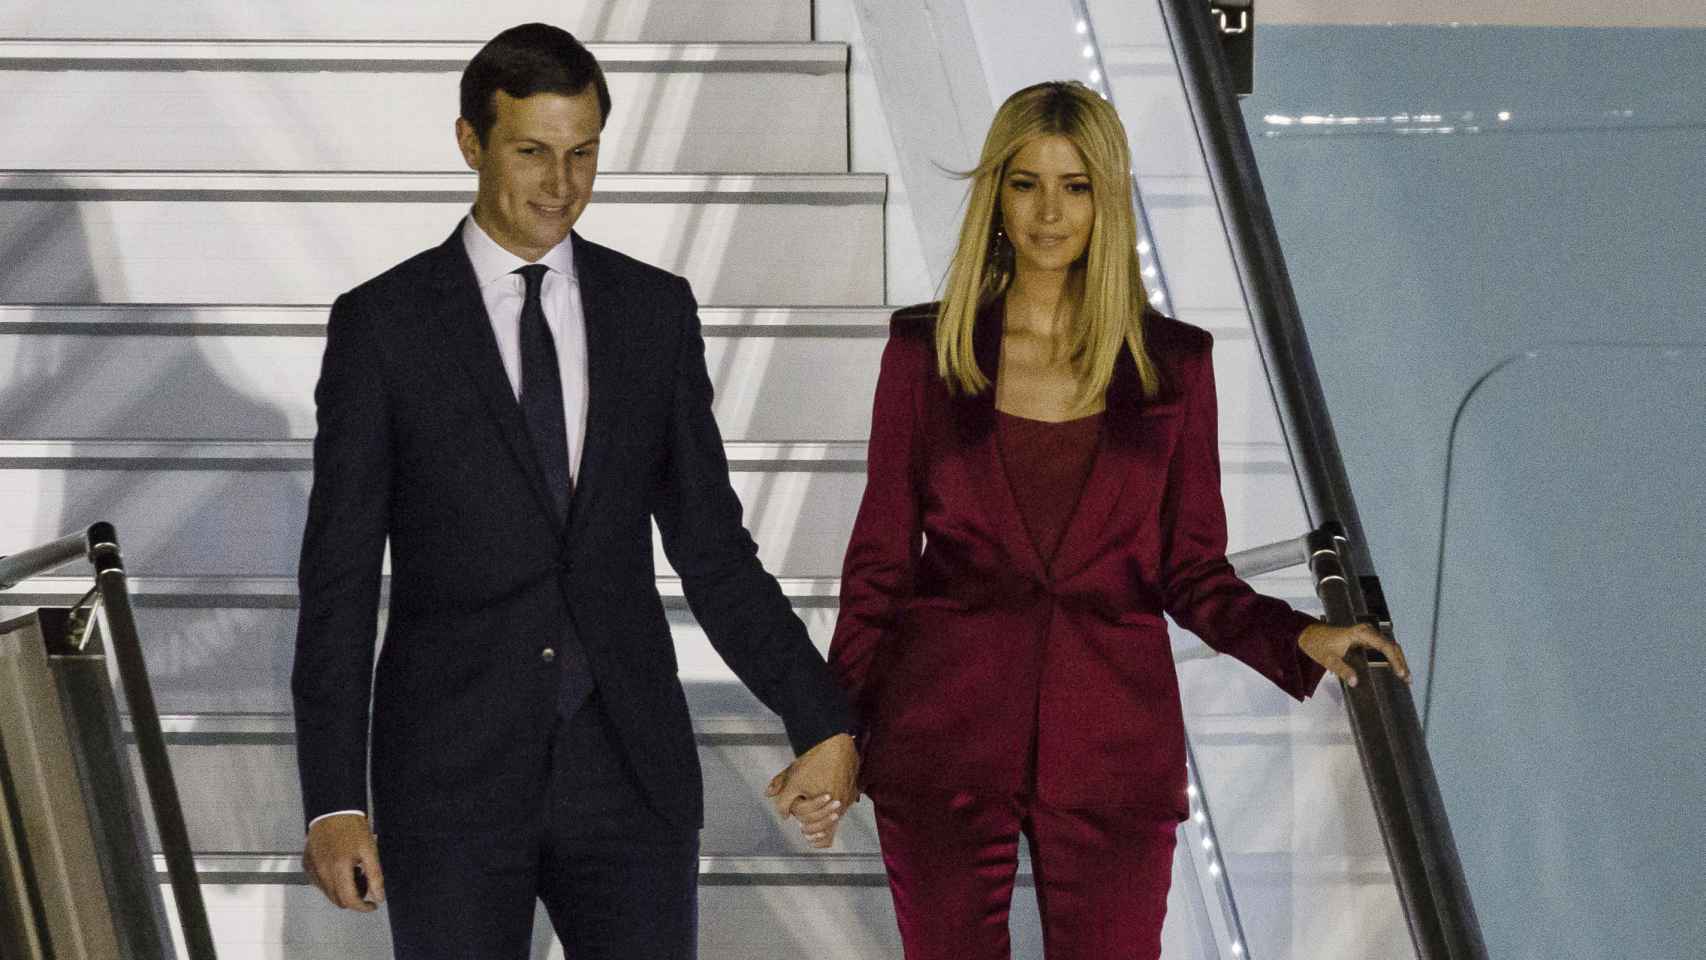 Jared Kushner, marido de Ivanka Trump, y su esposa en una imagen captada en julio de 2017.